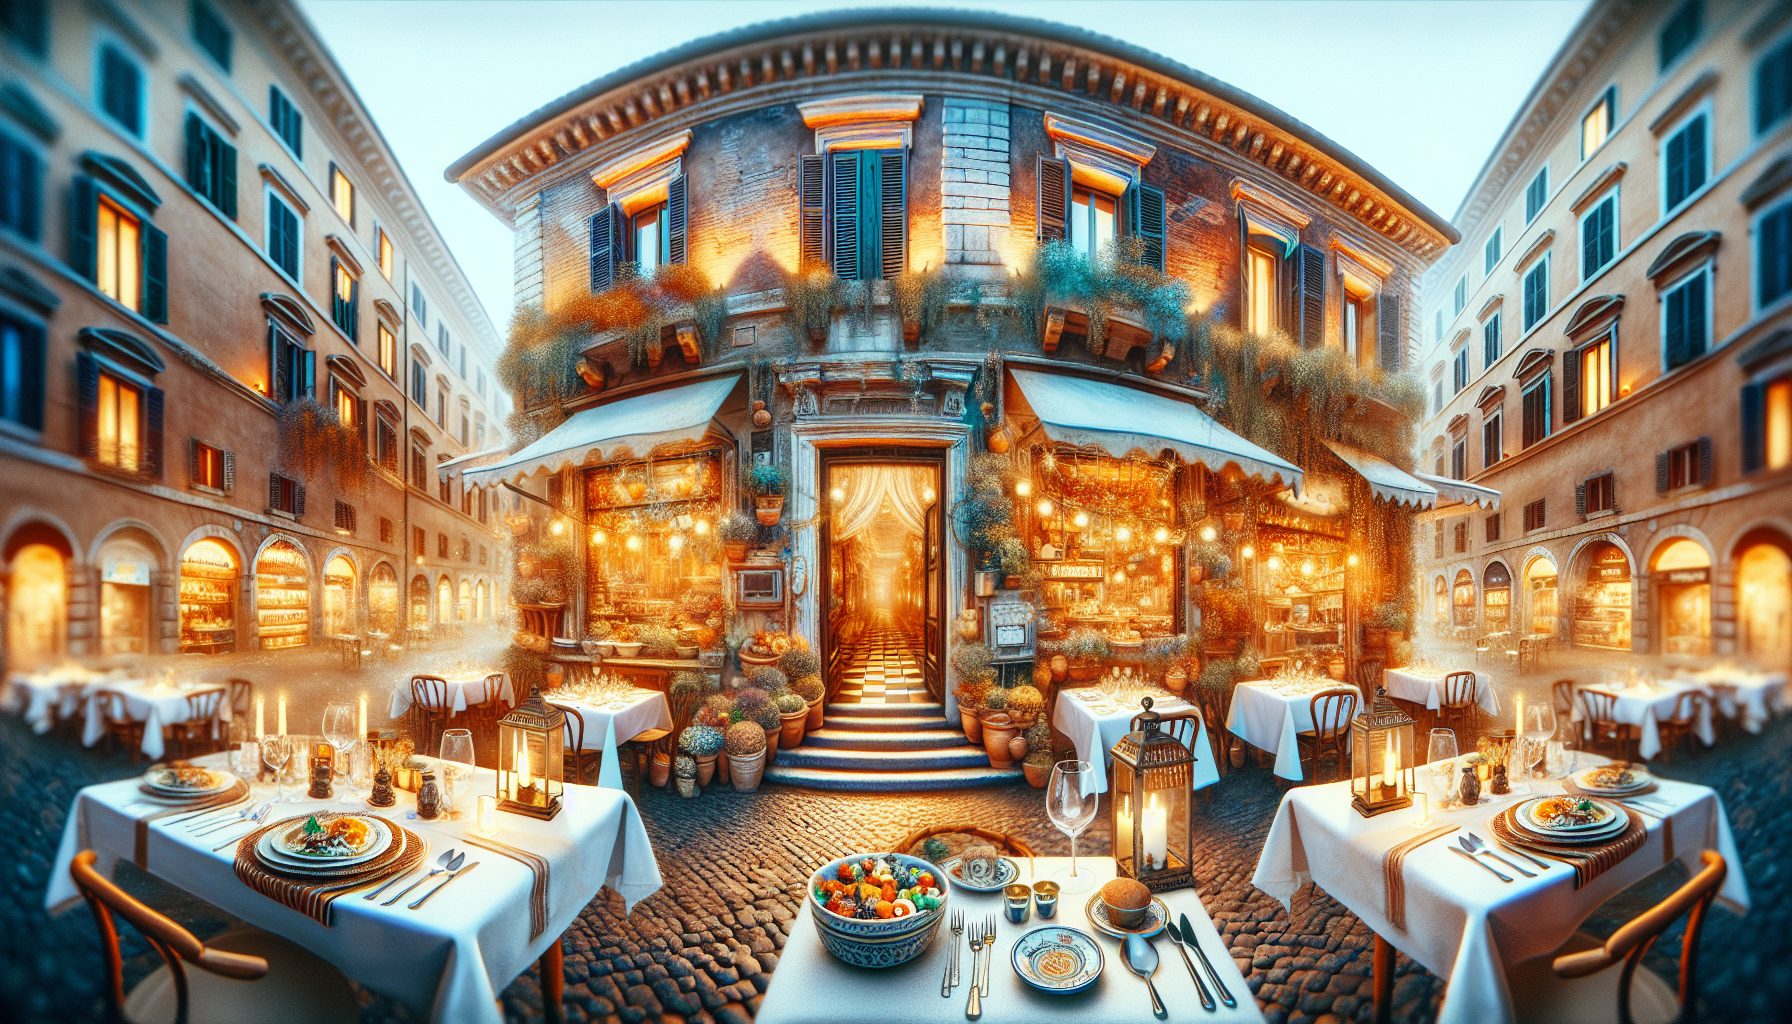 découvrez le meilleur restaurant de rome et savourez une délicieuse cuisine italienne : une expérience incontournable pour les amoureux de la gastronomie!